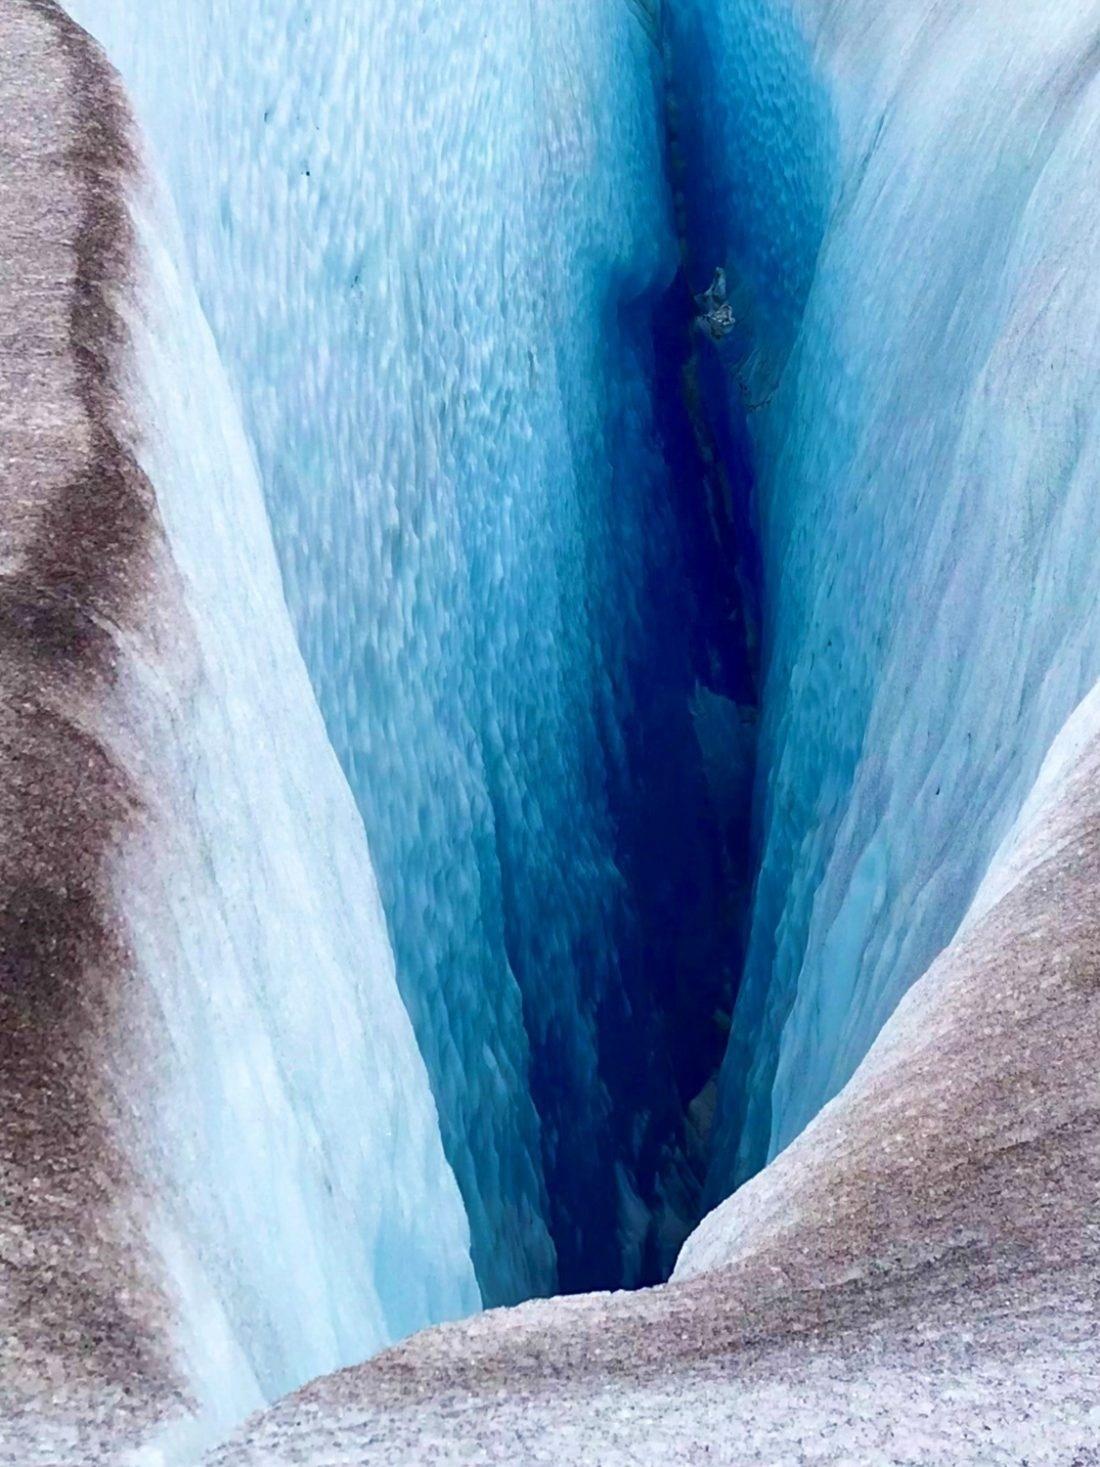 2º lugar da categoria Abstrato: foto tirada com iPhone 7 Plus mostra vão de uma geleira em Herbert Glacier, Alaska - Neil Nesheim/IPP Awards